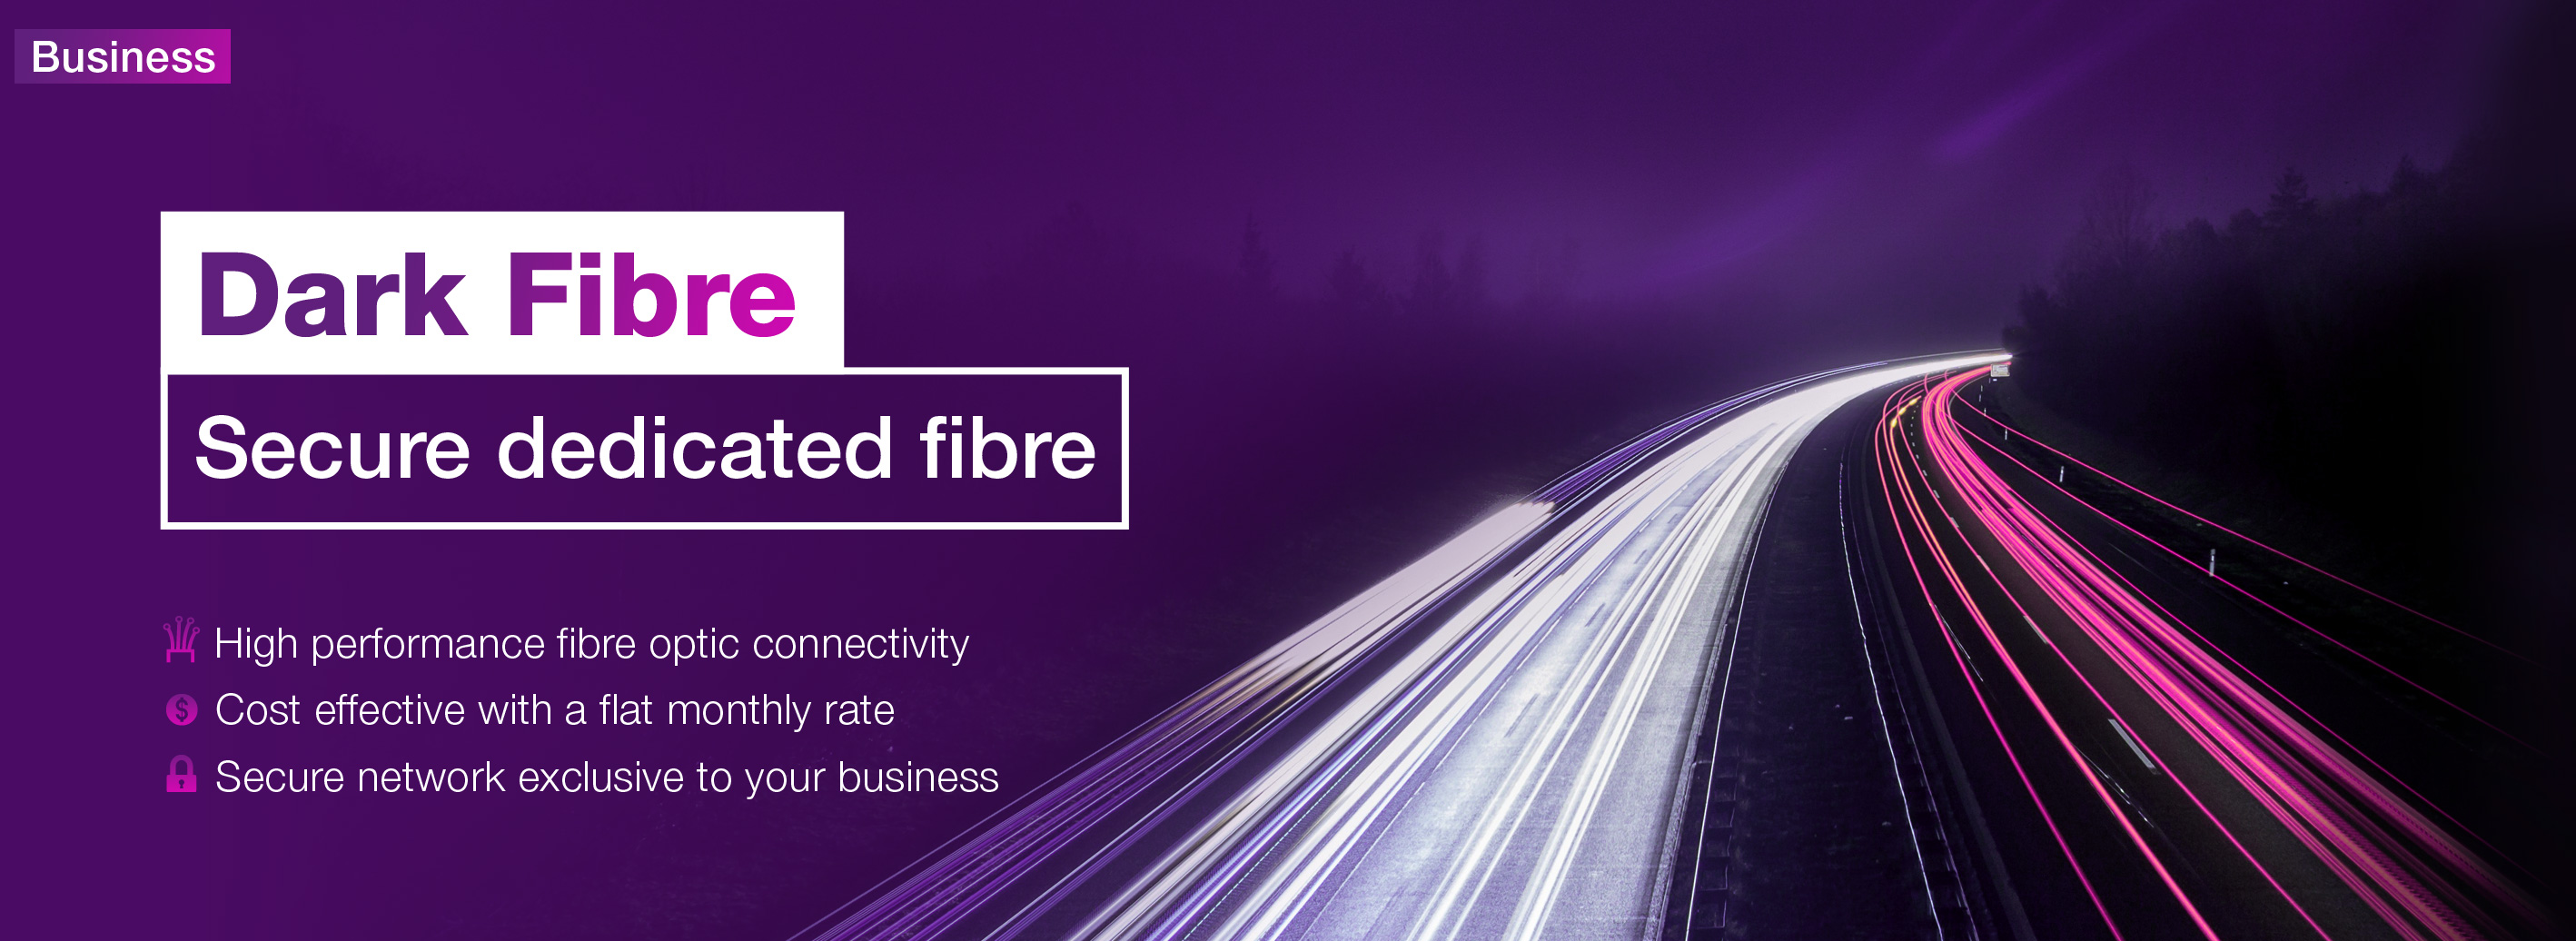 TPG Dark Fibre - Secure dedicated fibre